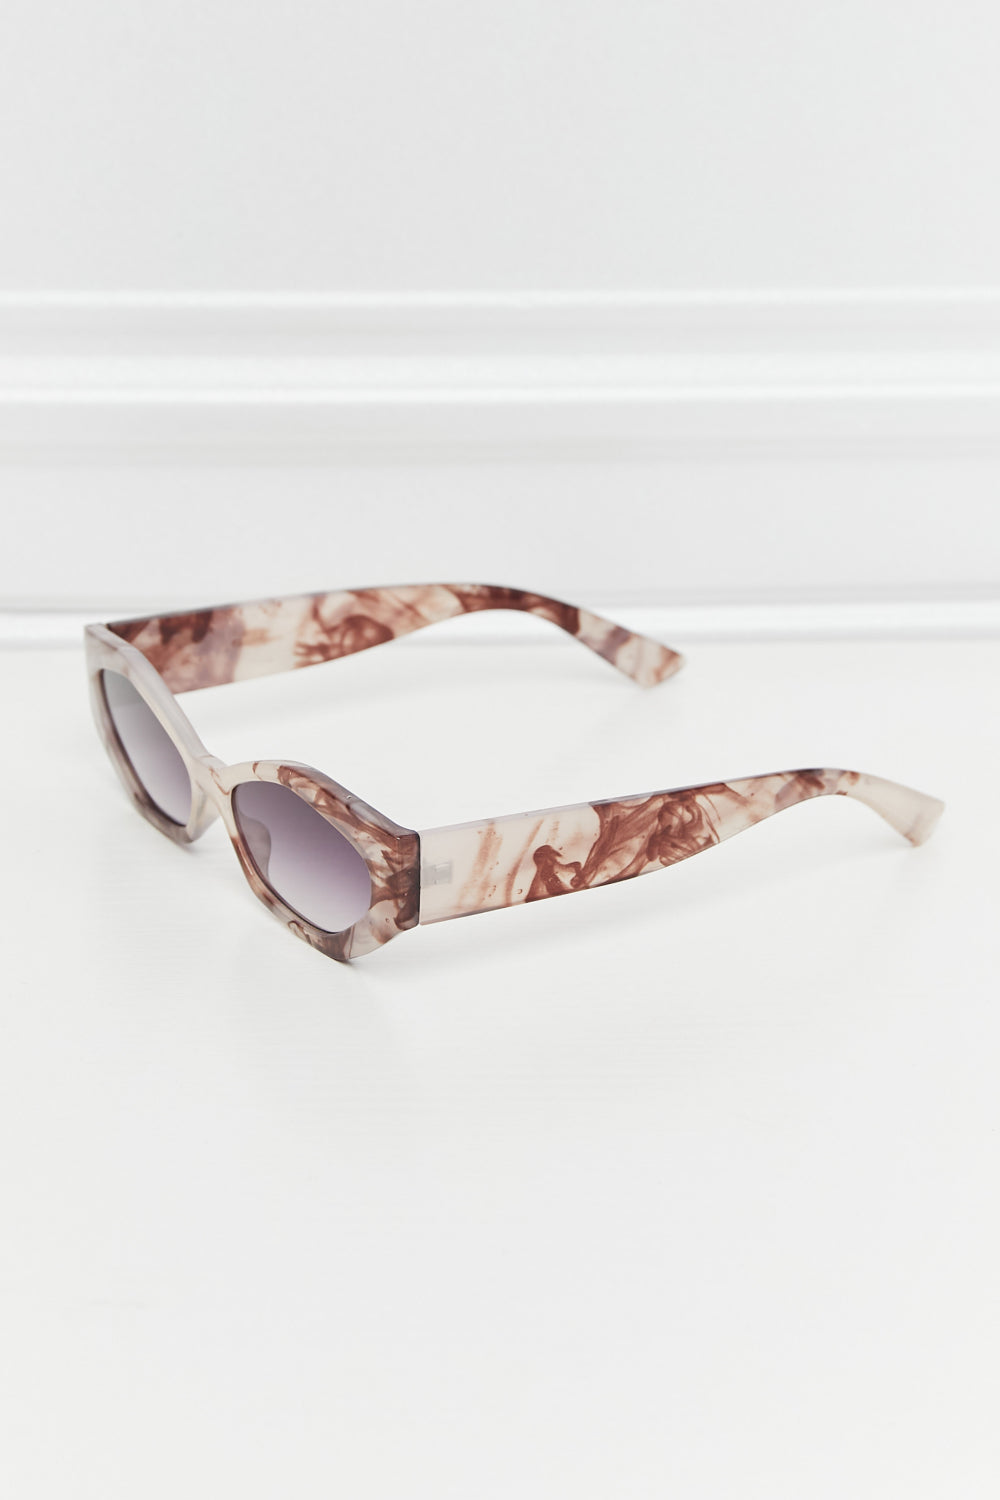 Polycarbonate Frame Wayfarer Sunglasses Mid Gray One Size Sunglasses by Vim&Vigor | Vim&Vigor Boutique